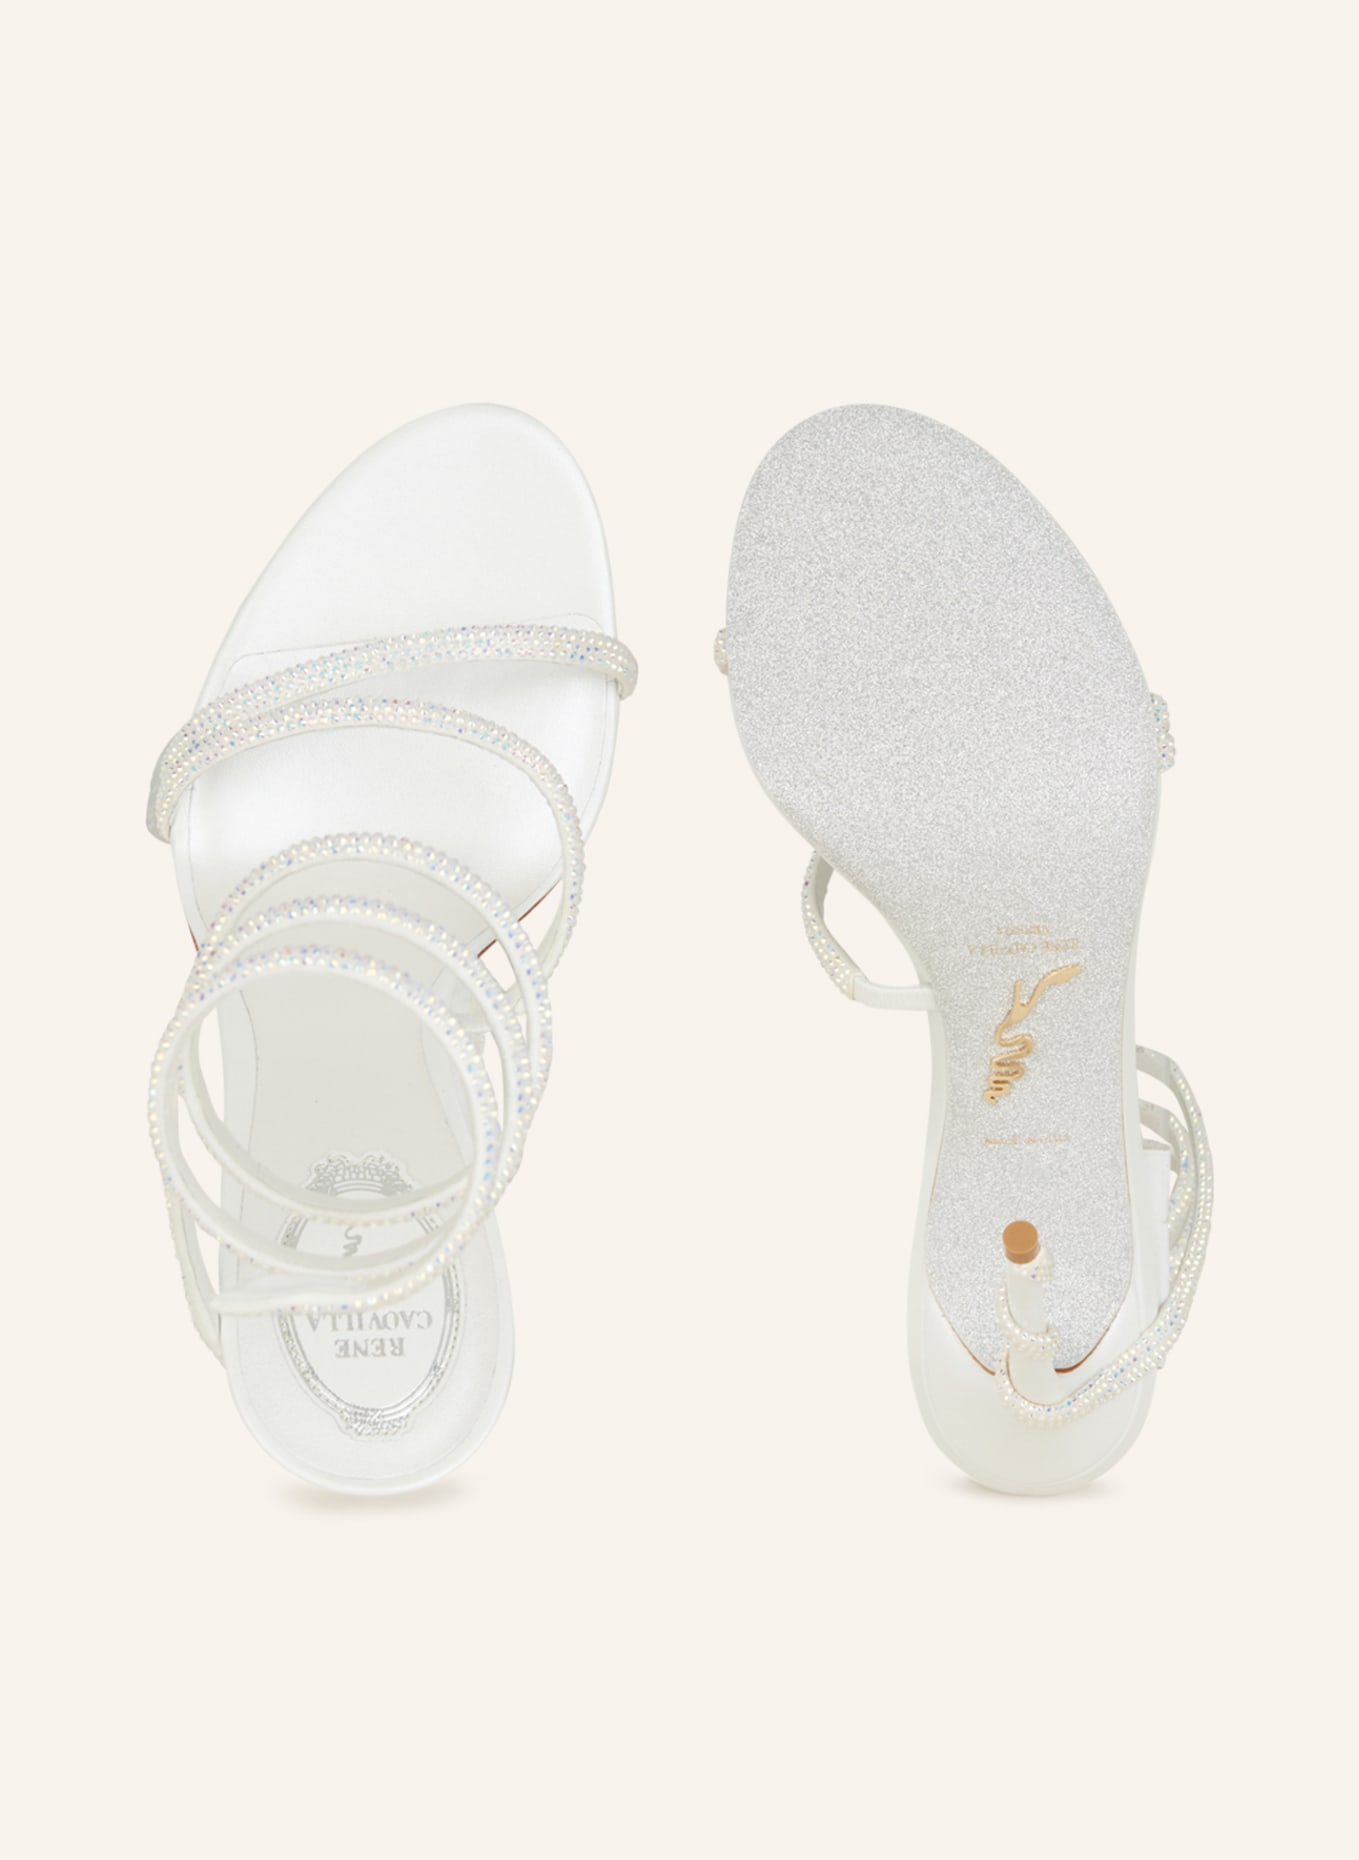 RENE CAOVILLA Sandals MARGOT, Color: WHITE (Image 5)